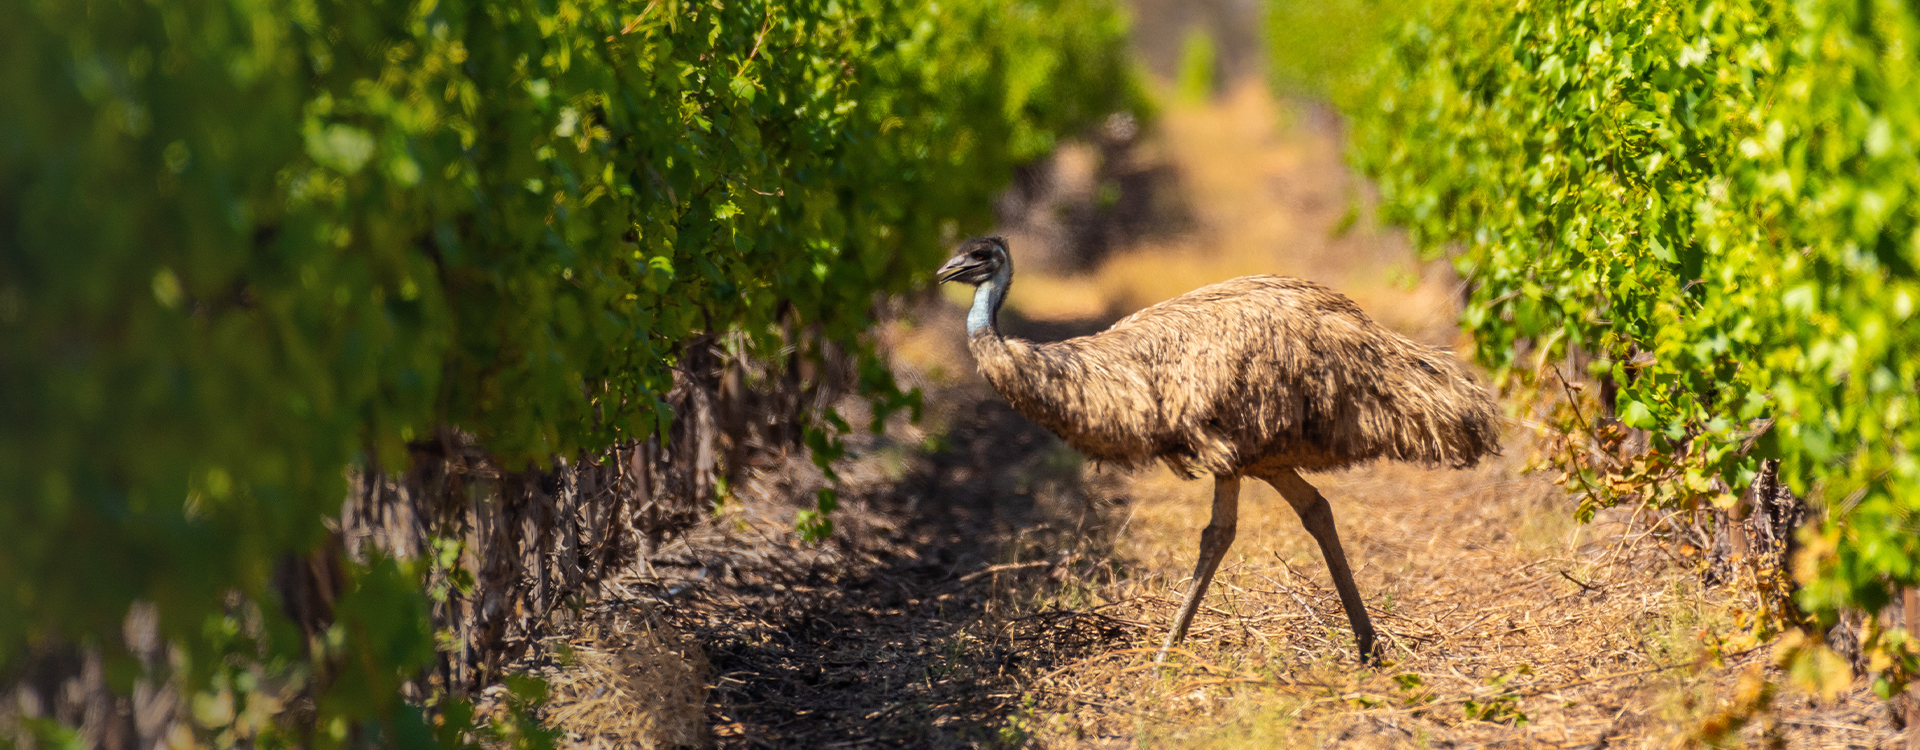 Emu walking through vineyard